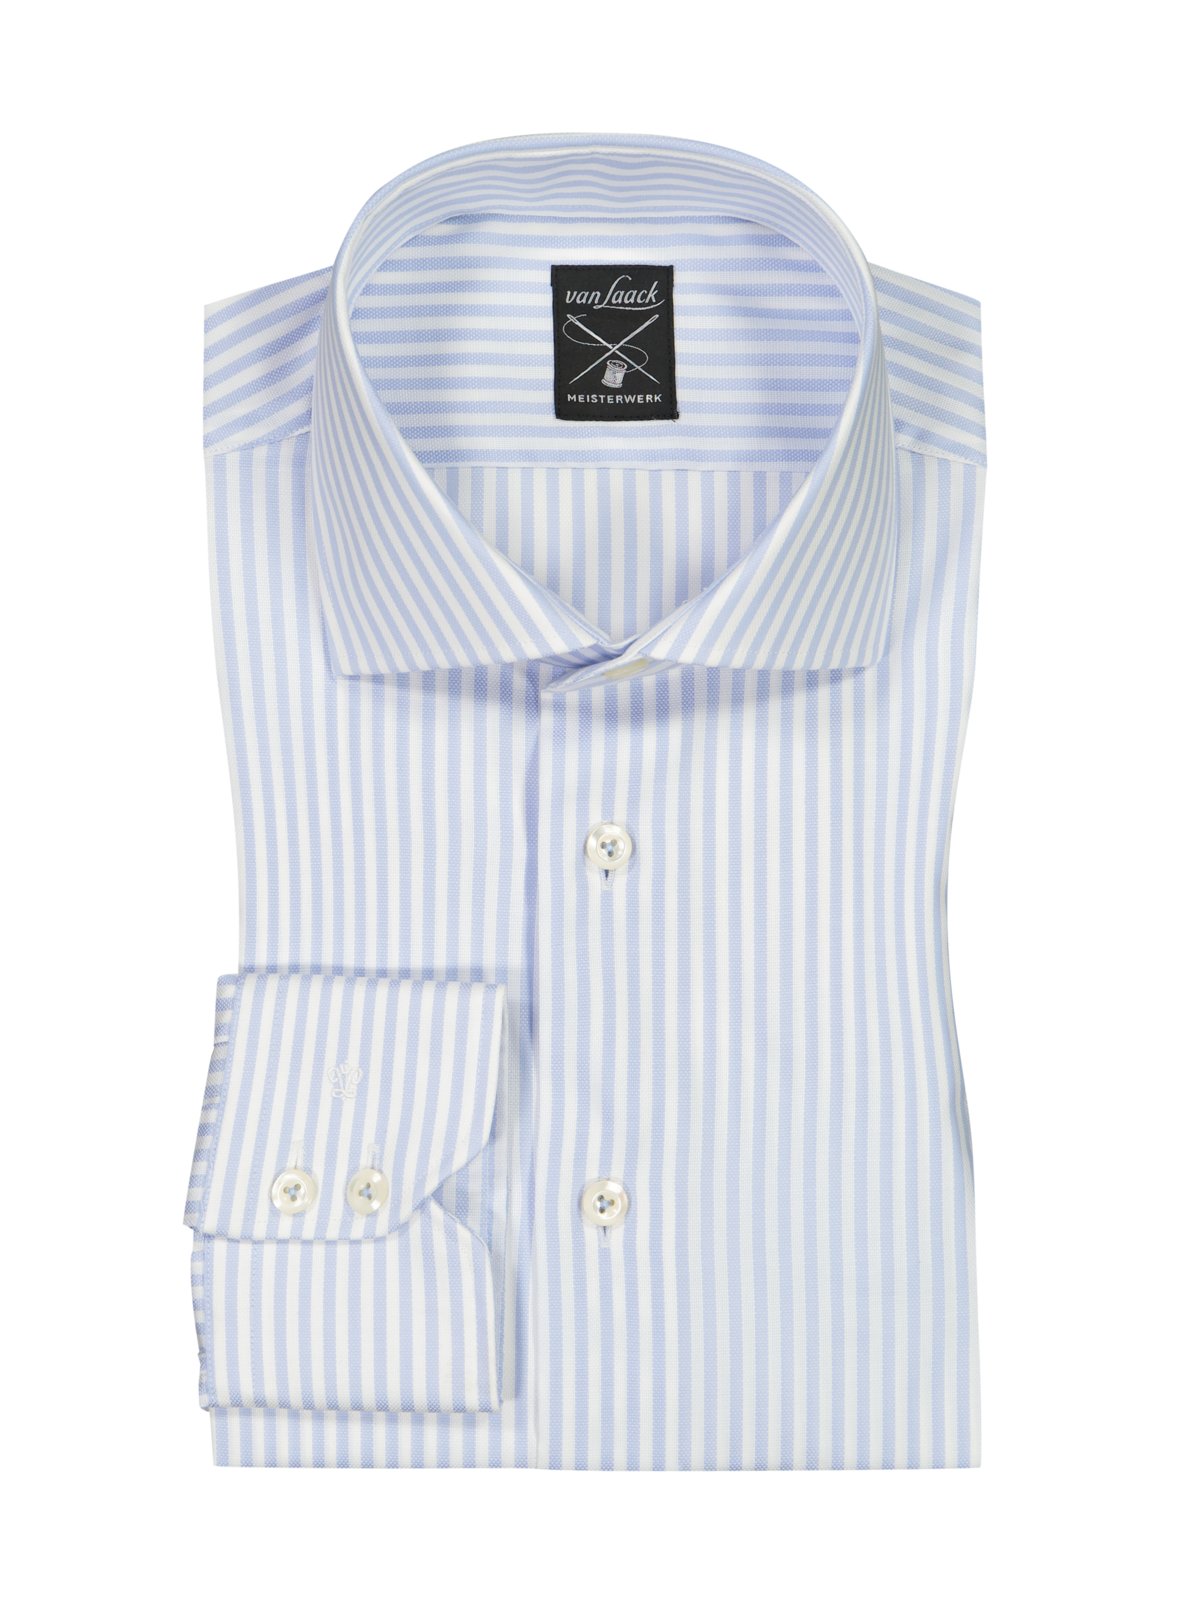 Van Laack Hemd aus Baumwolle mit Streifenmuster, Tailored Fit product